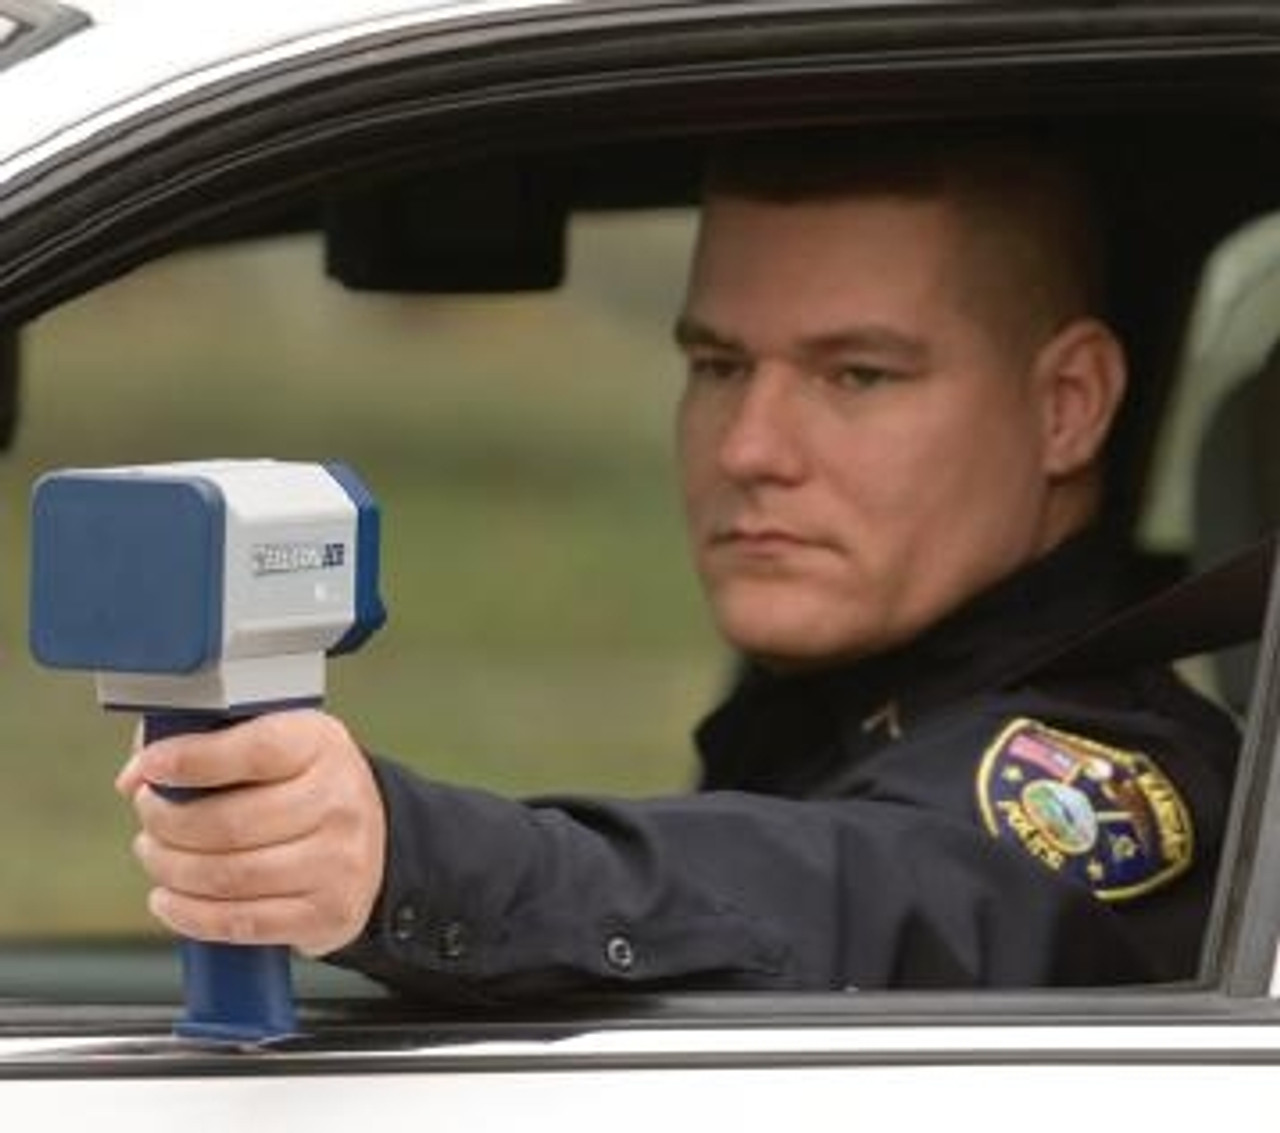 Stalker II  Hand-held police radar gun for in-car or motorcycle use.